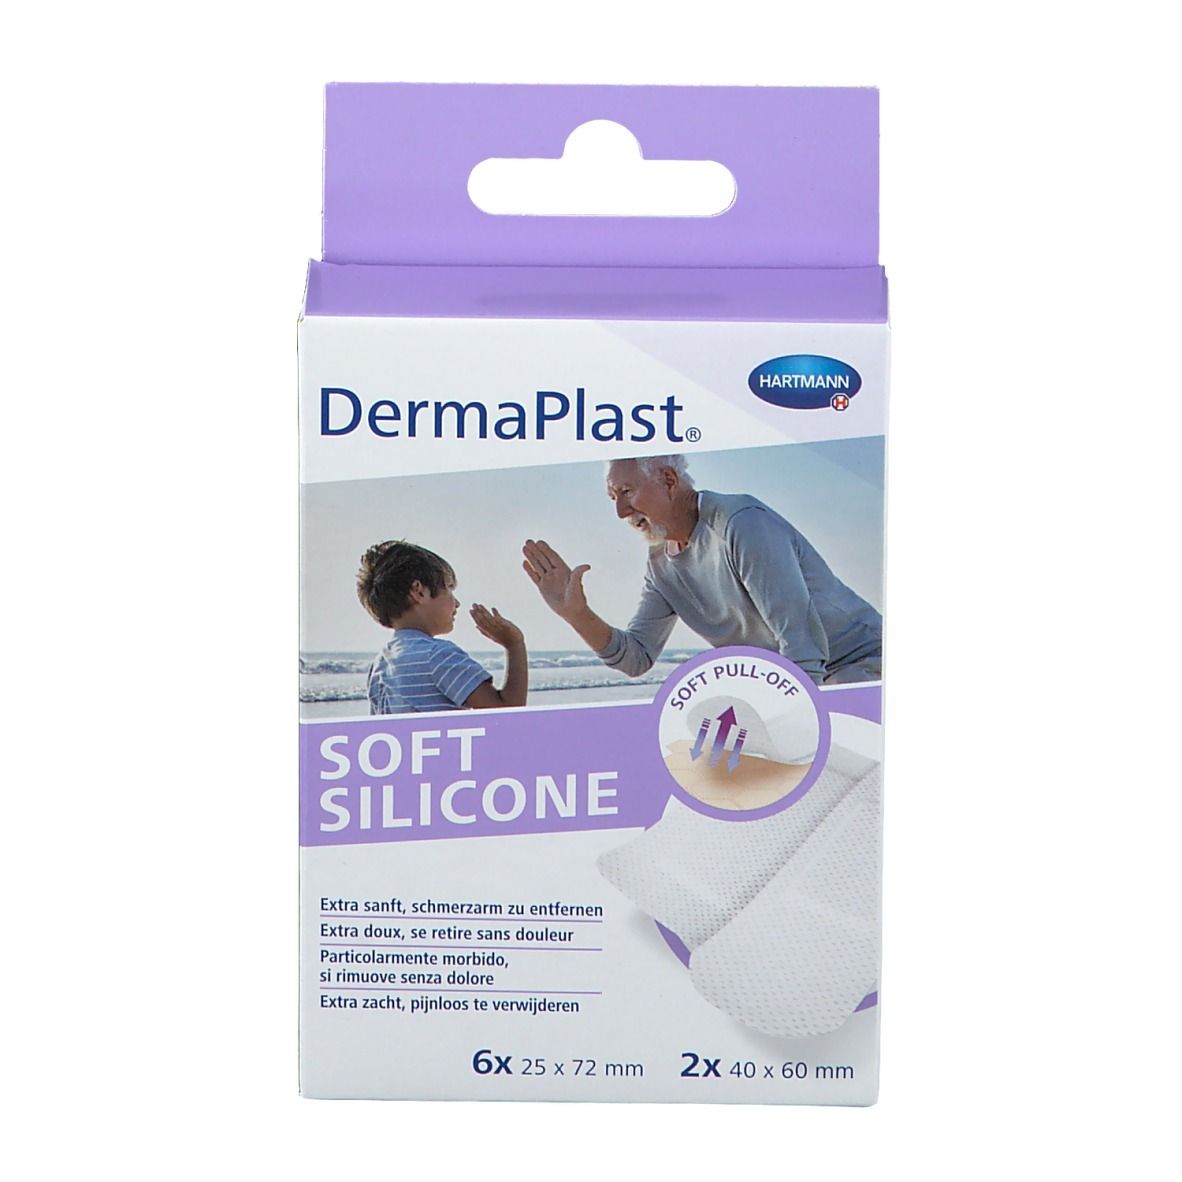 DermaPlast® Soft Silicone